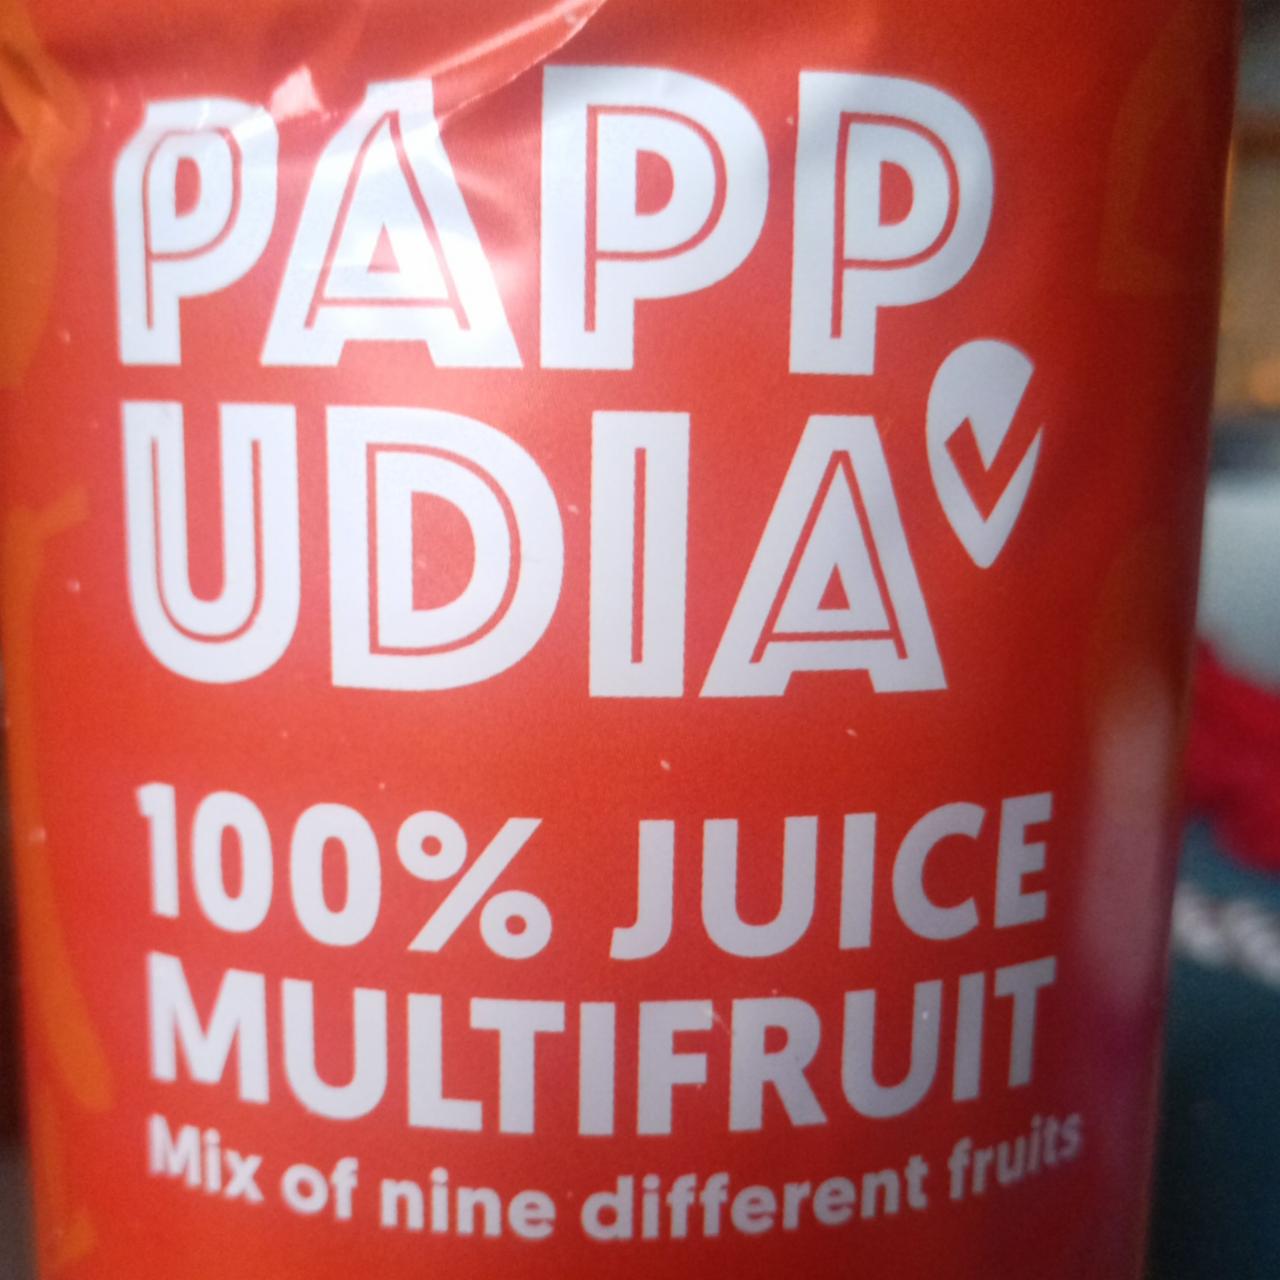 Fotografie - 100% juice multifruit Pappudia